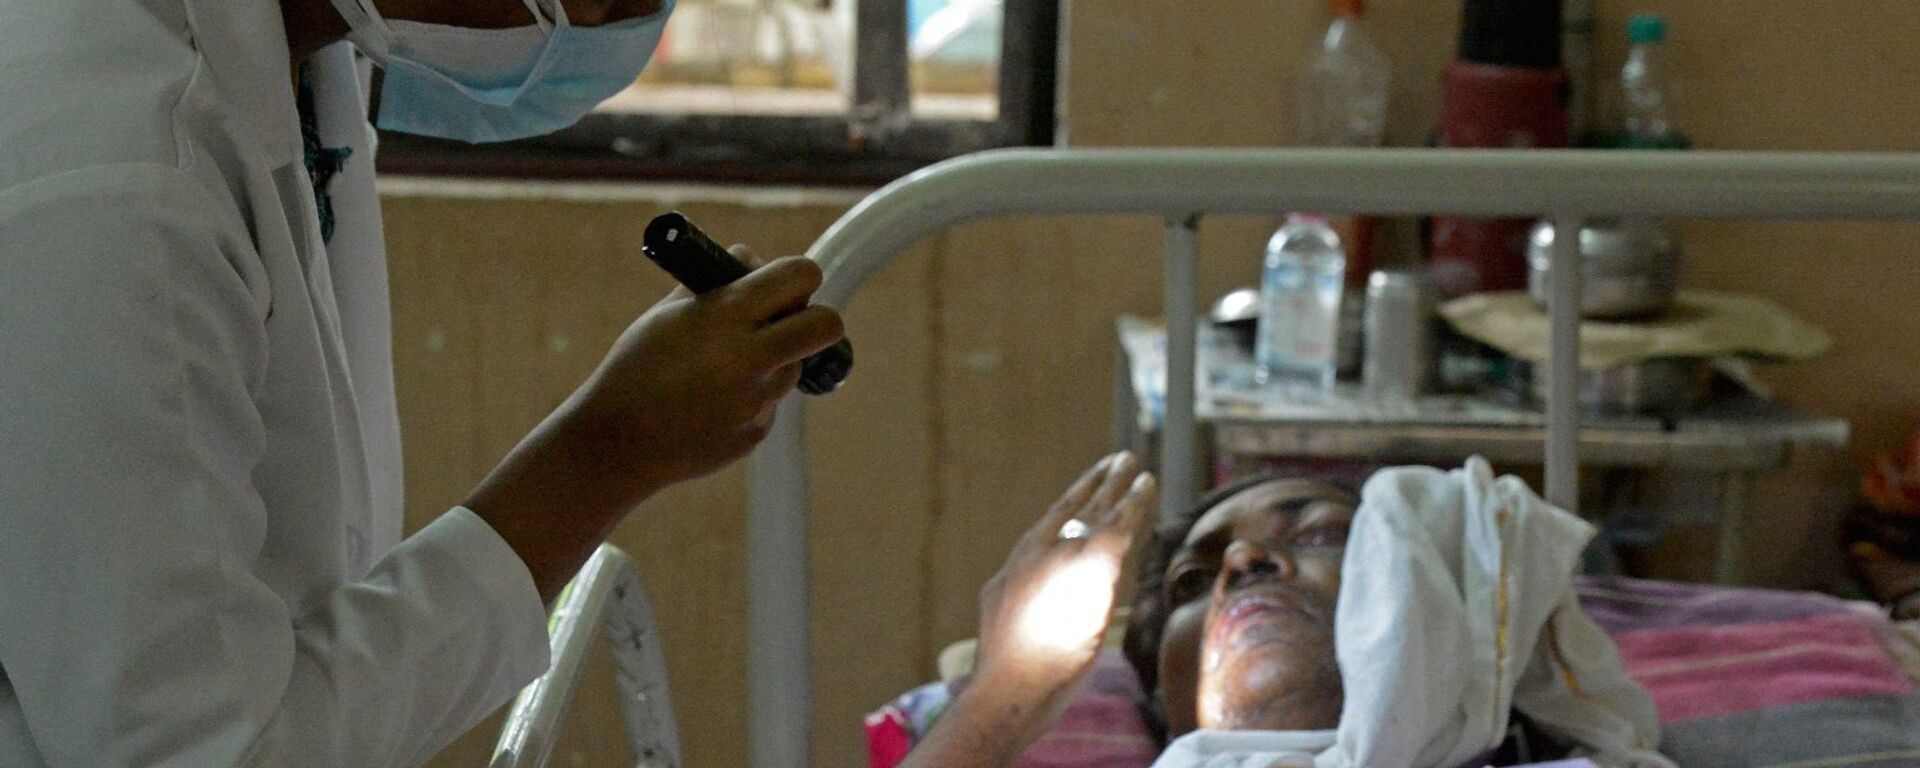 طبيب يفحص مريضا تعافى من فيروس كورونا المستجد وأصيب الآن بالفطر الأسود في جناح بمستشفى حكومي في حيدر أباد، الهند، 21 مايو/ أيار 2021. - سبوتنيك عربي, 1920, 23.05.2021